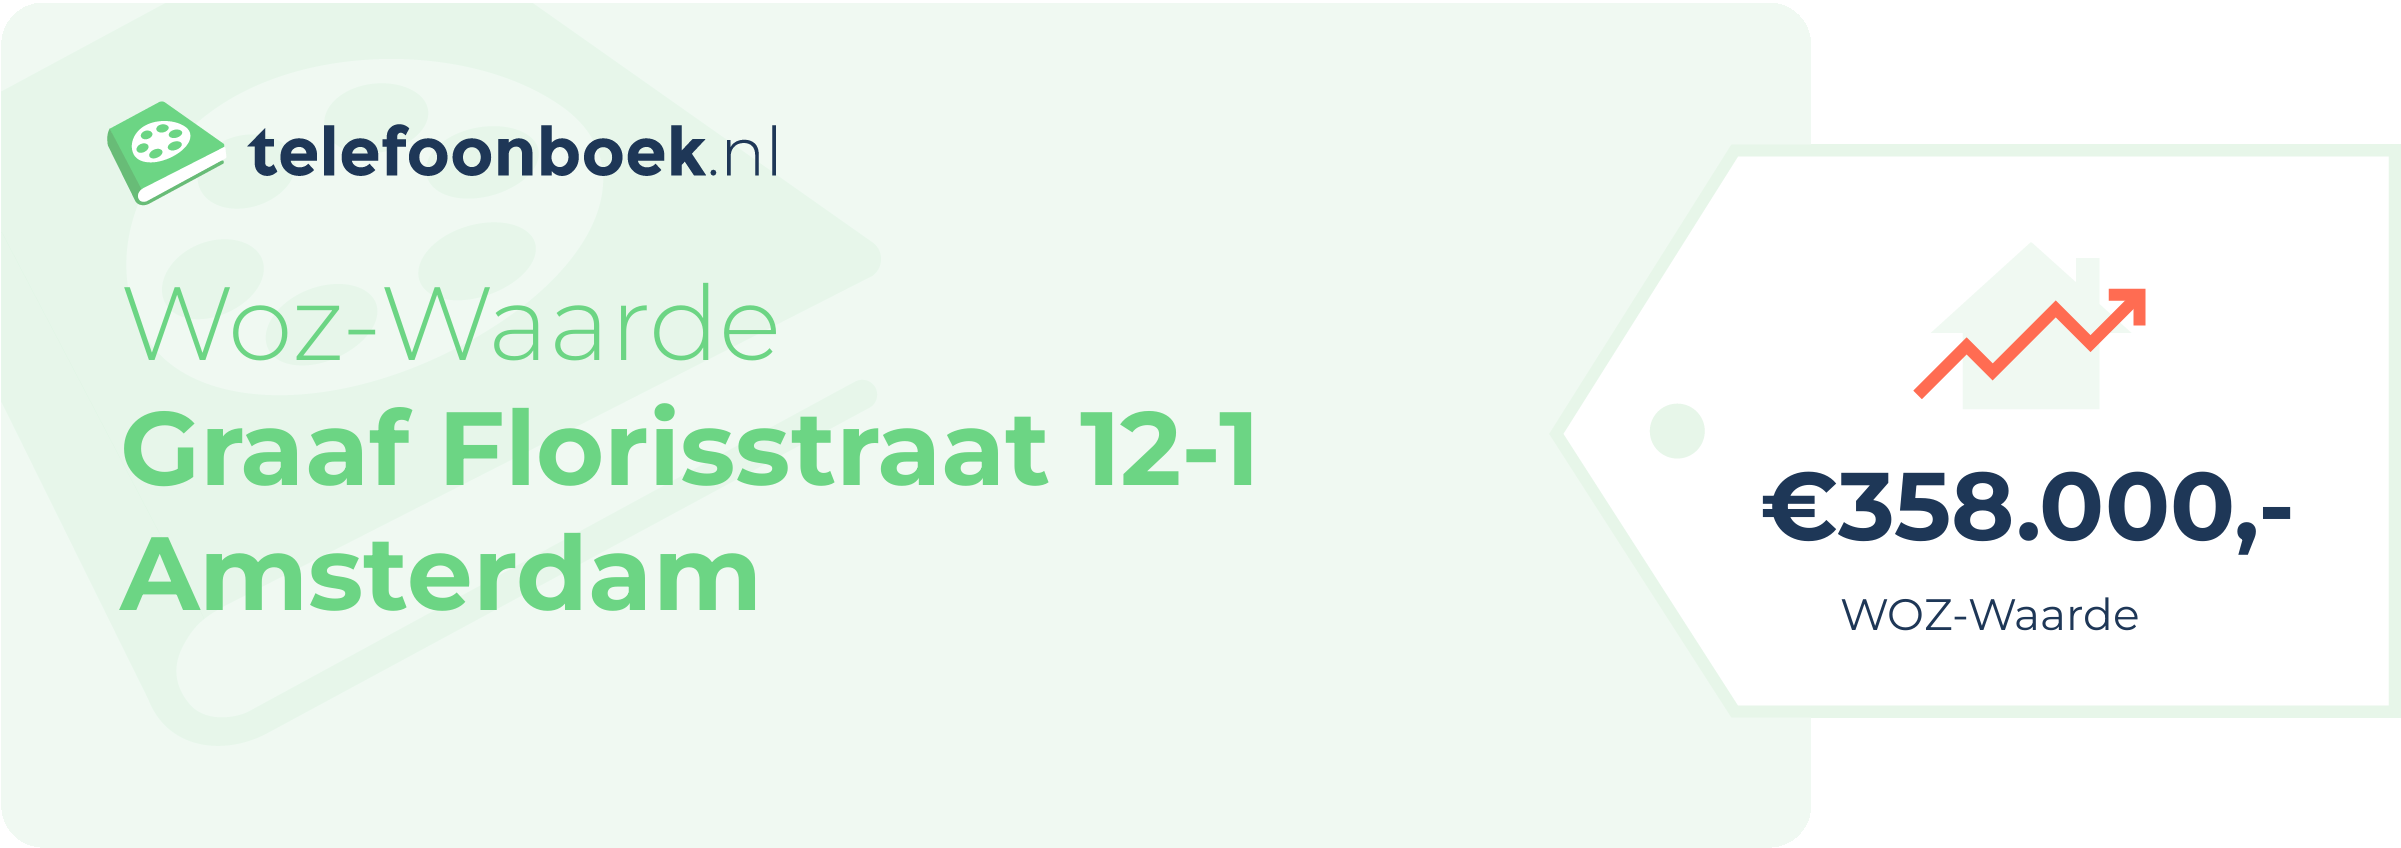 WOZ-waarde Graaf Florisstraat 12-1 Amsterdam